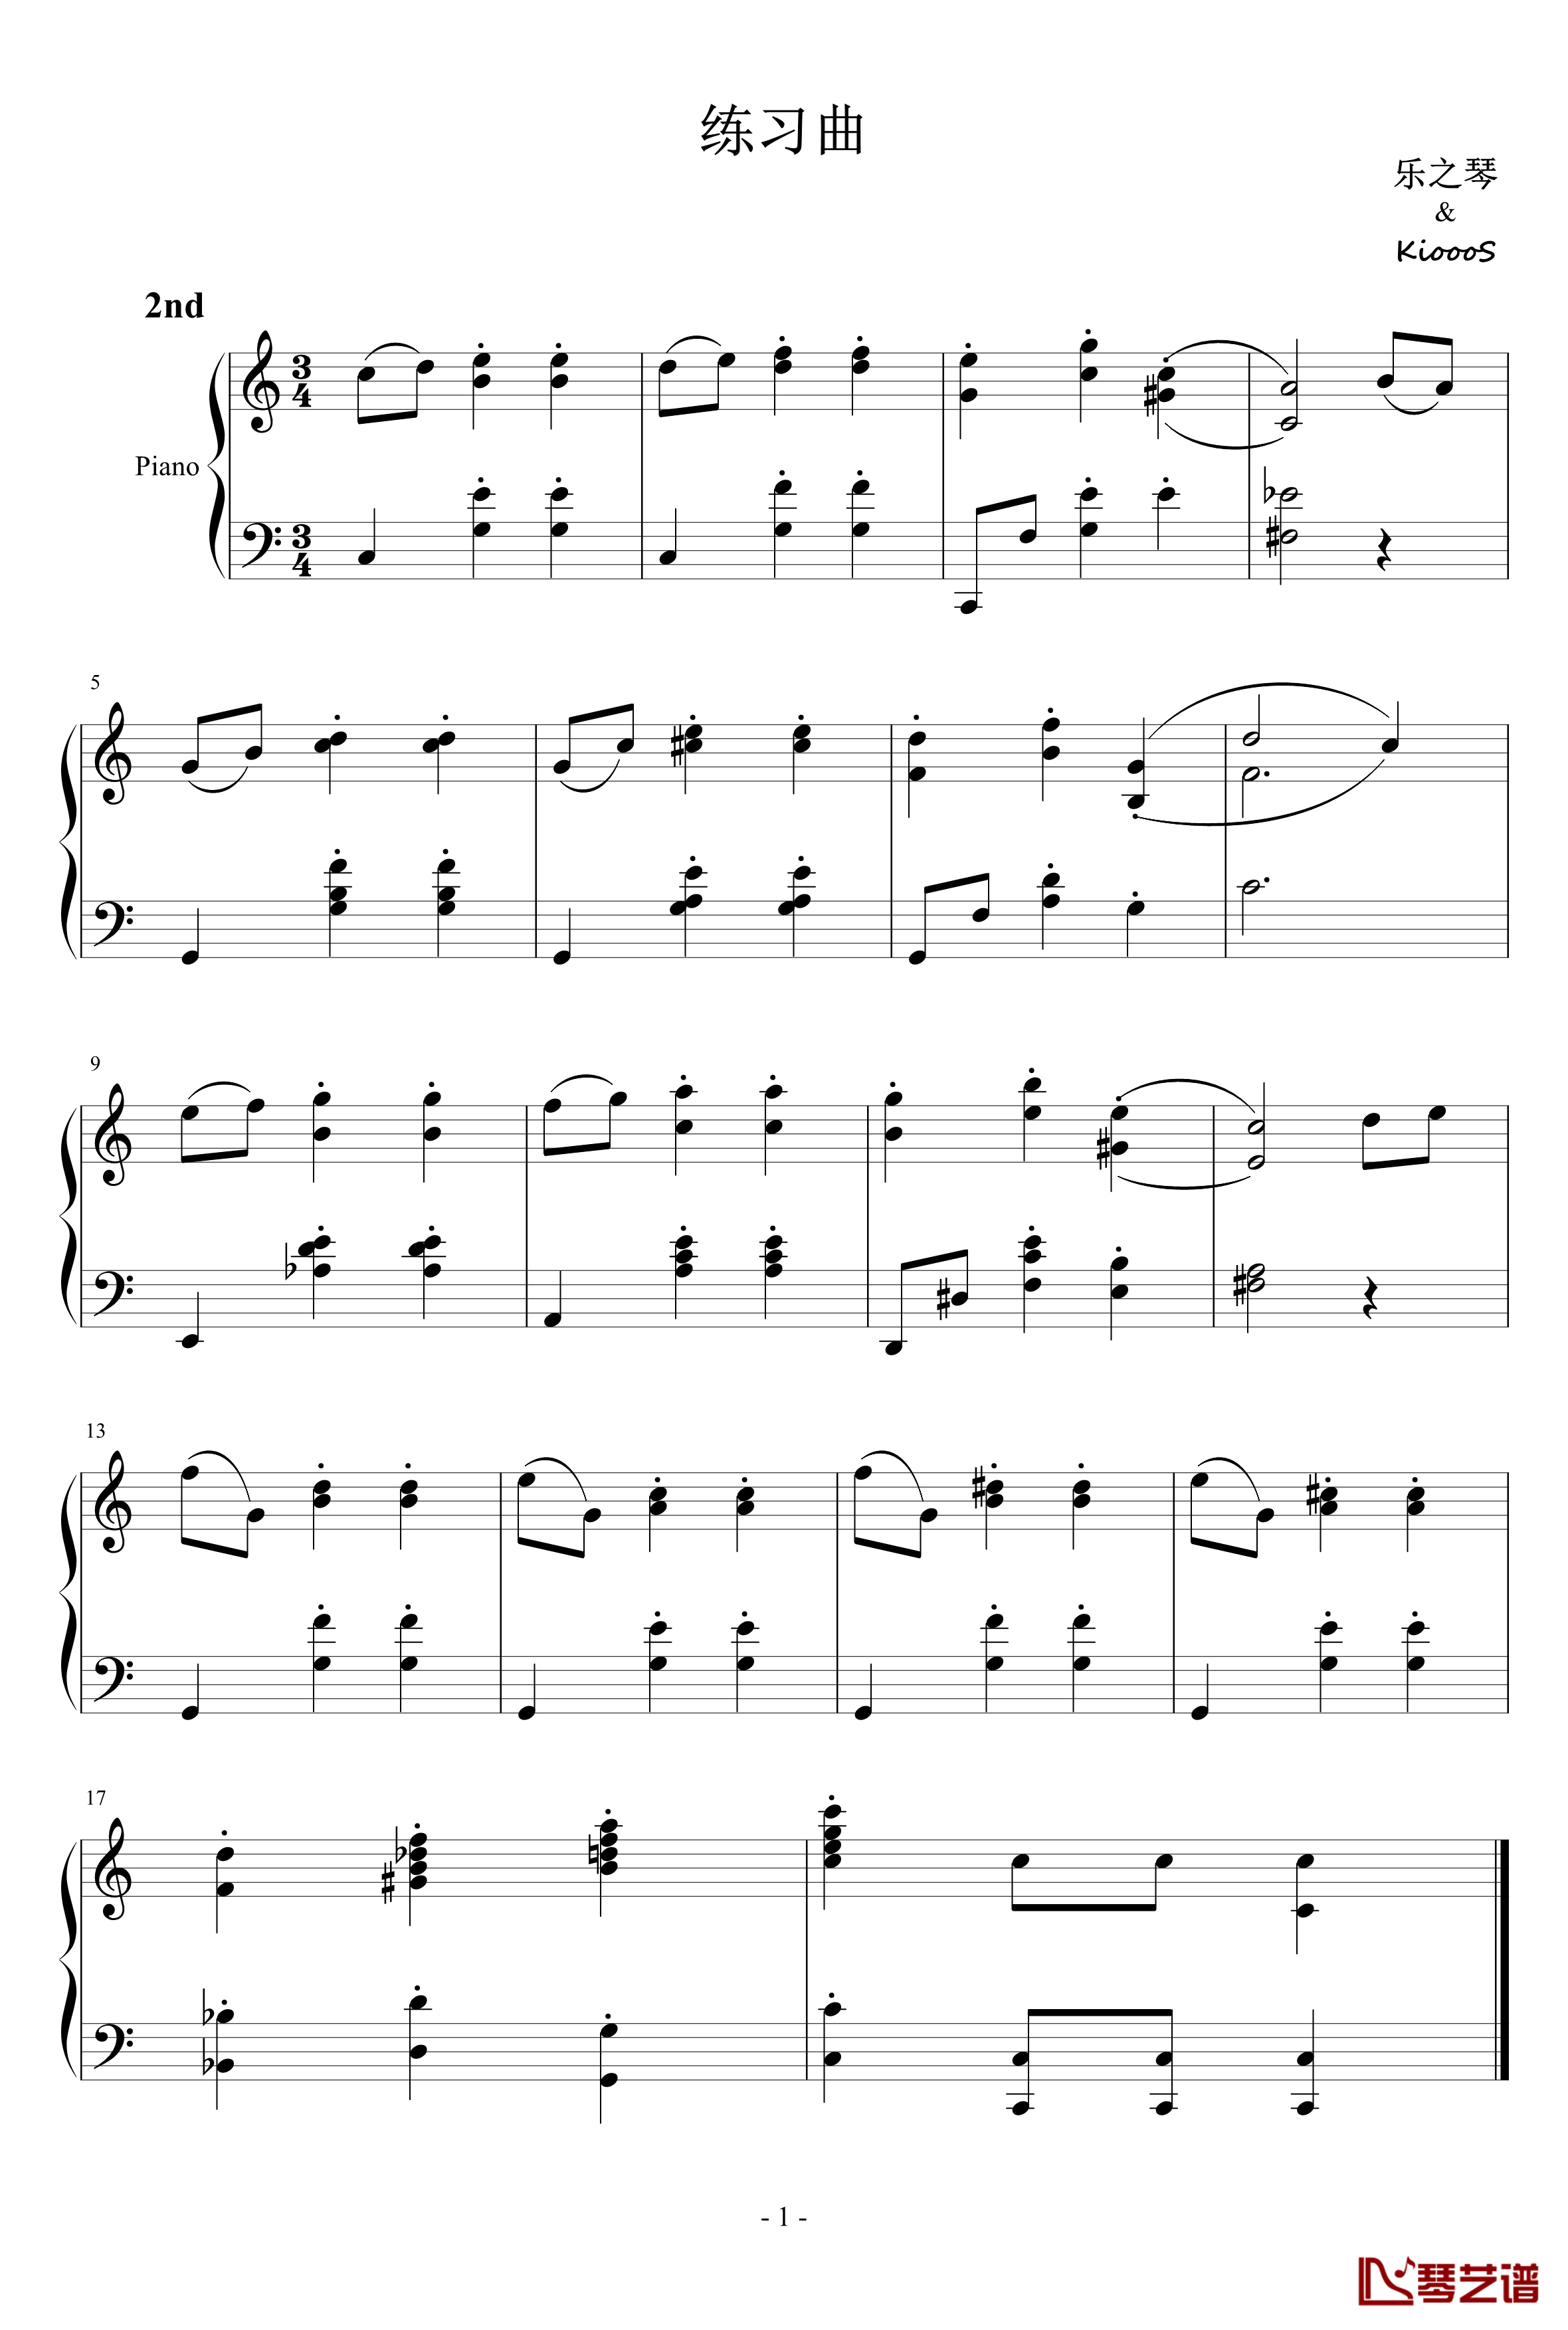 练习曲01钢琴谱-番外-KioooS-乐之琴1